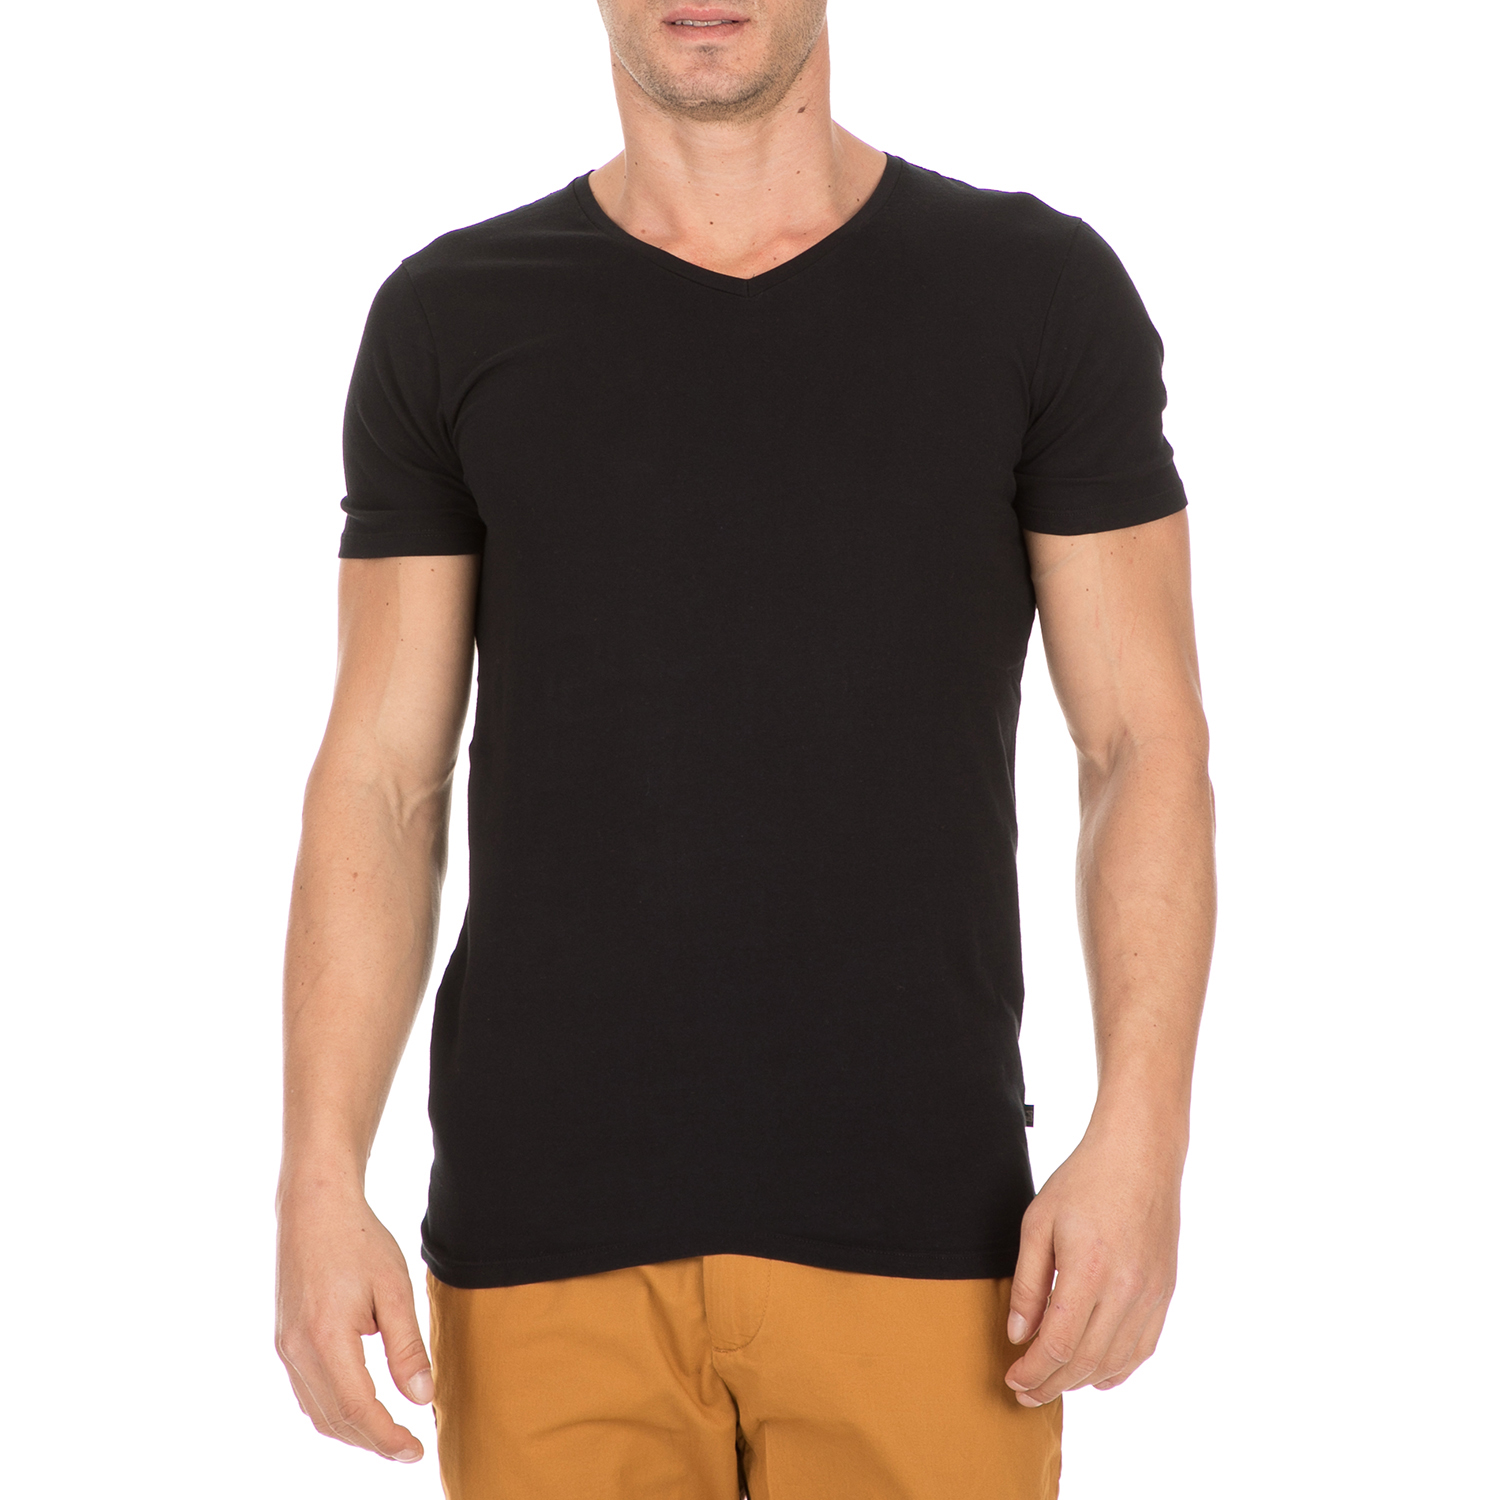 Ανδρικά/Ρούχα/Μπλούζες/Κοντομάνικες SCOTCH & SODA - Ανδρικό t-shirt SCOTCH & SODA μαύρο